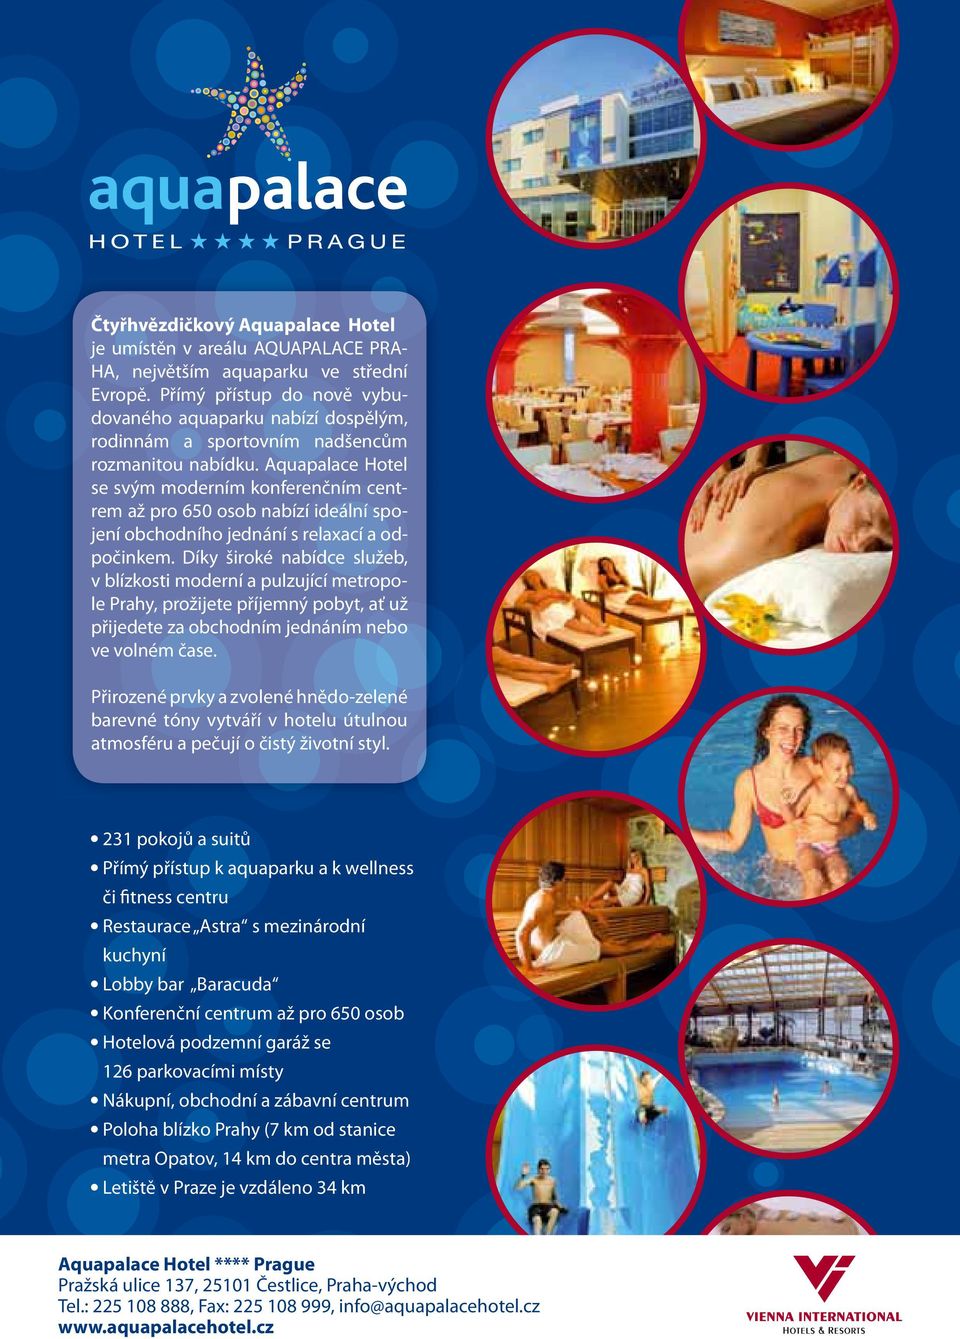 Aquapalace Hotel se svým moderním konferenčním centrem až pro 650 osob nabízí ideální spojení obchodního jednání s relaxací a odpočinkem.